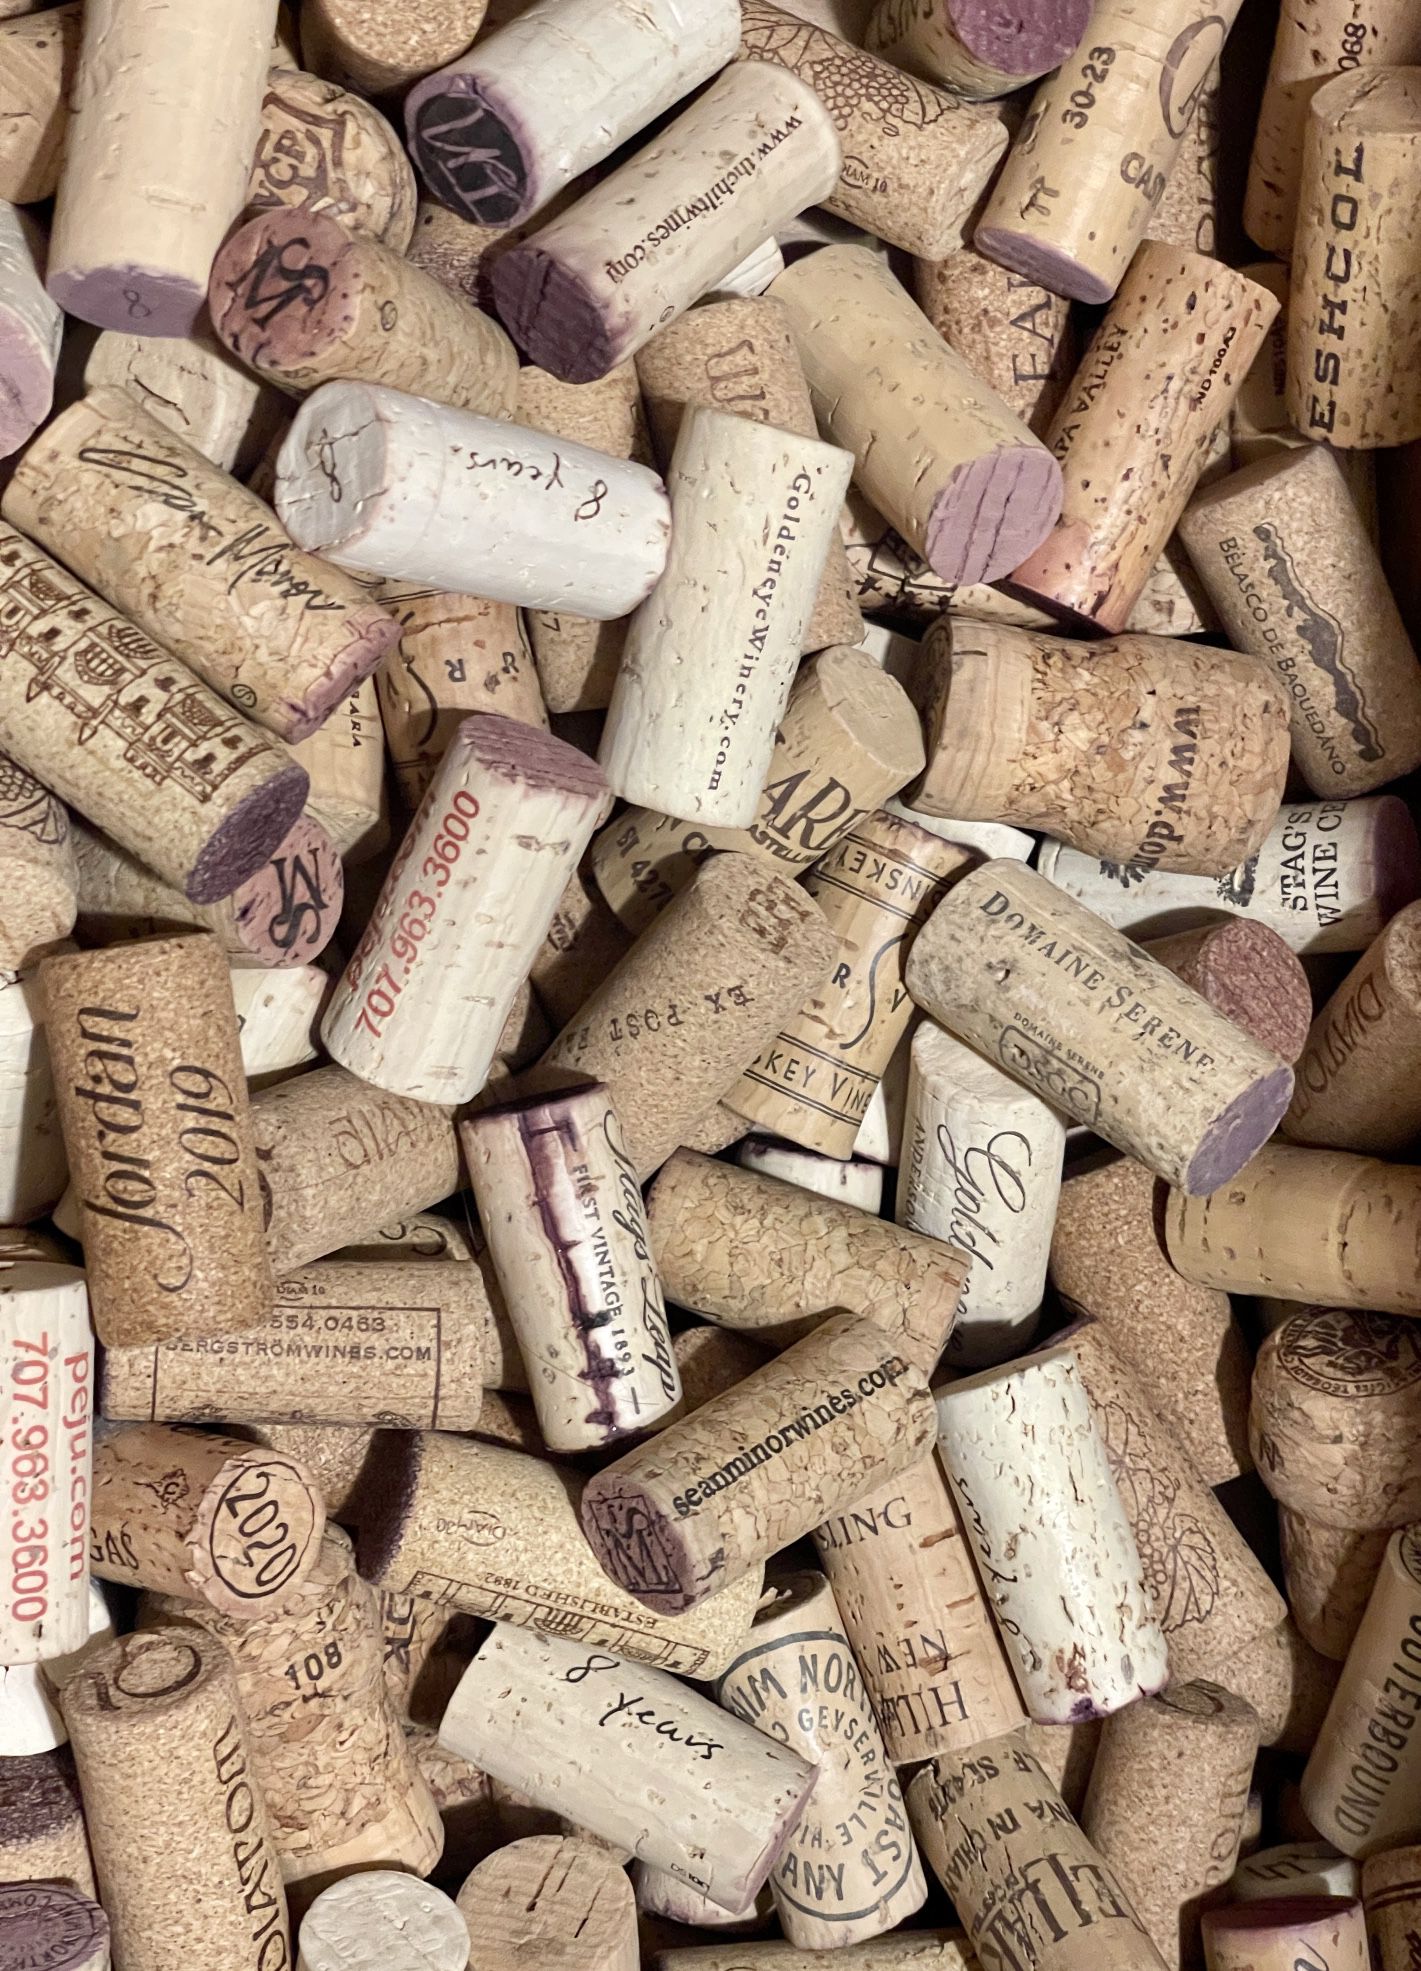 100 Used Fine Wine Corks (Unbroken)